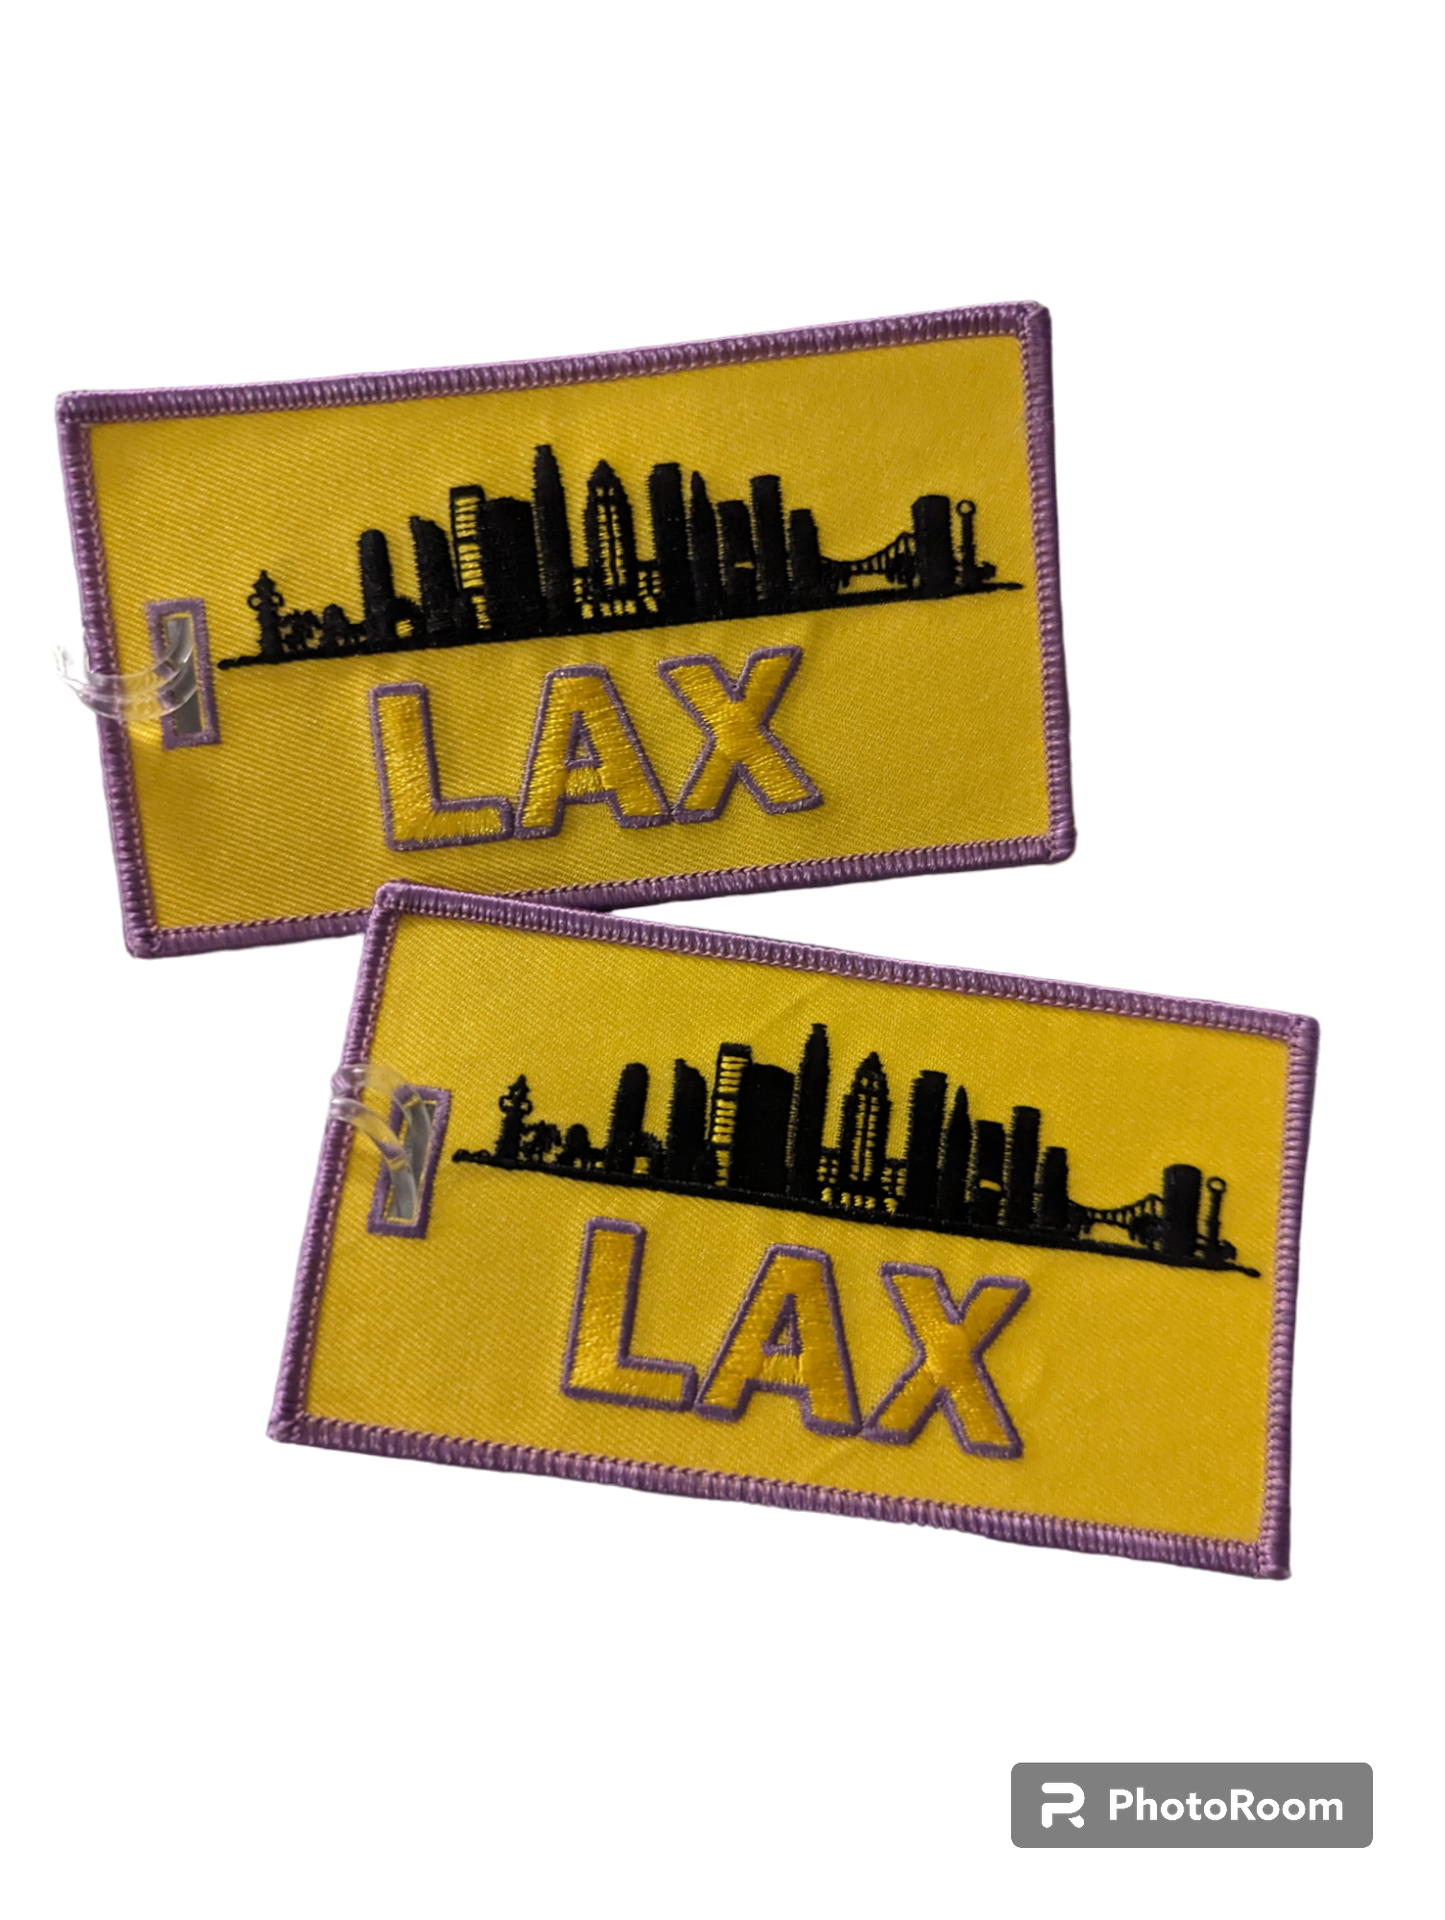 LAX Luggage Tag